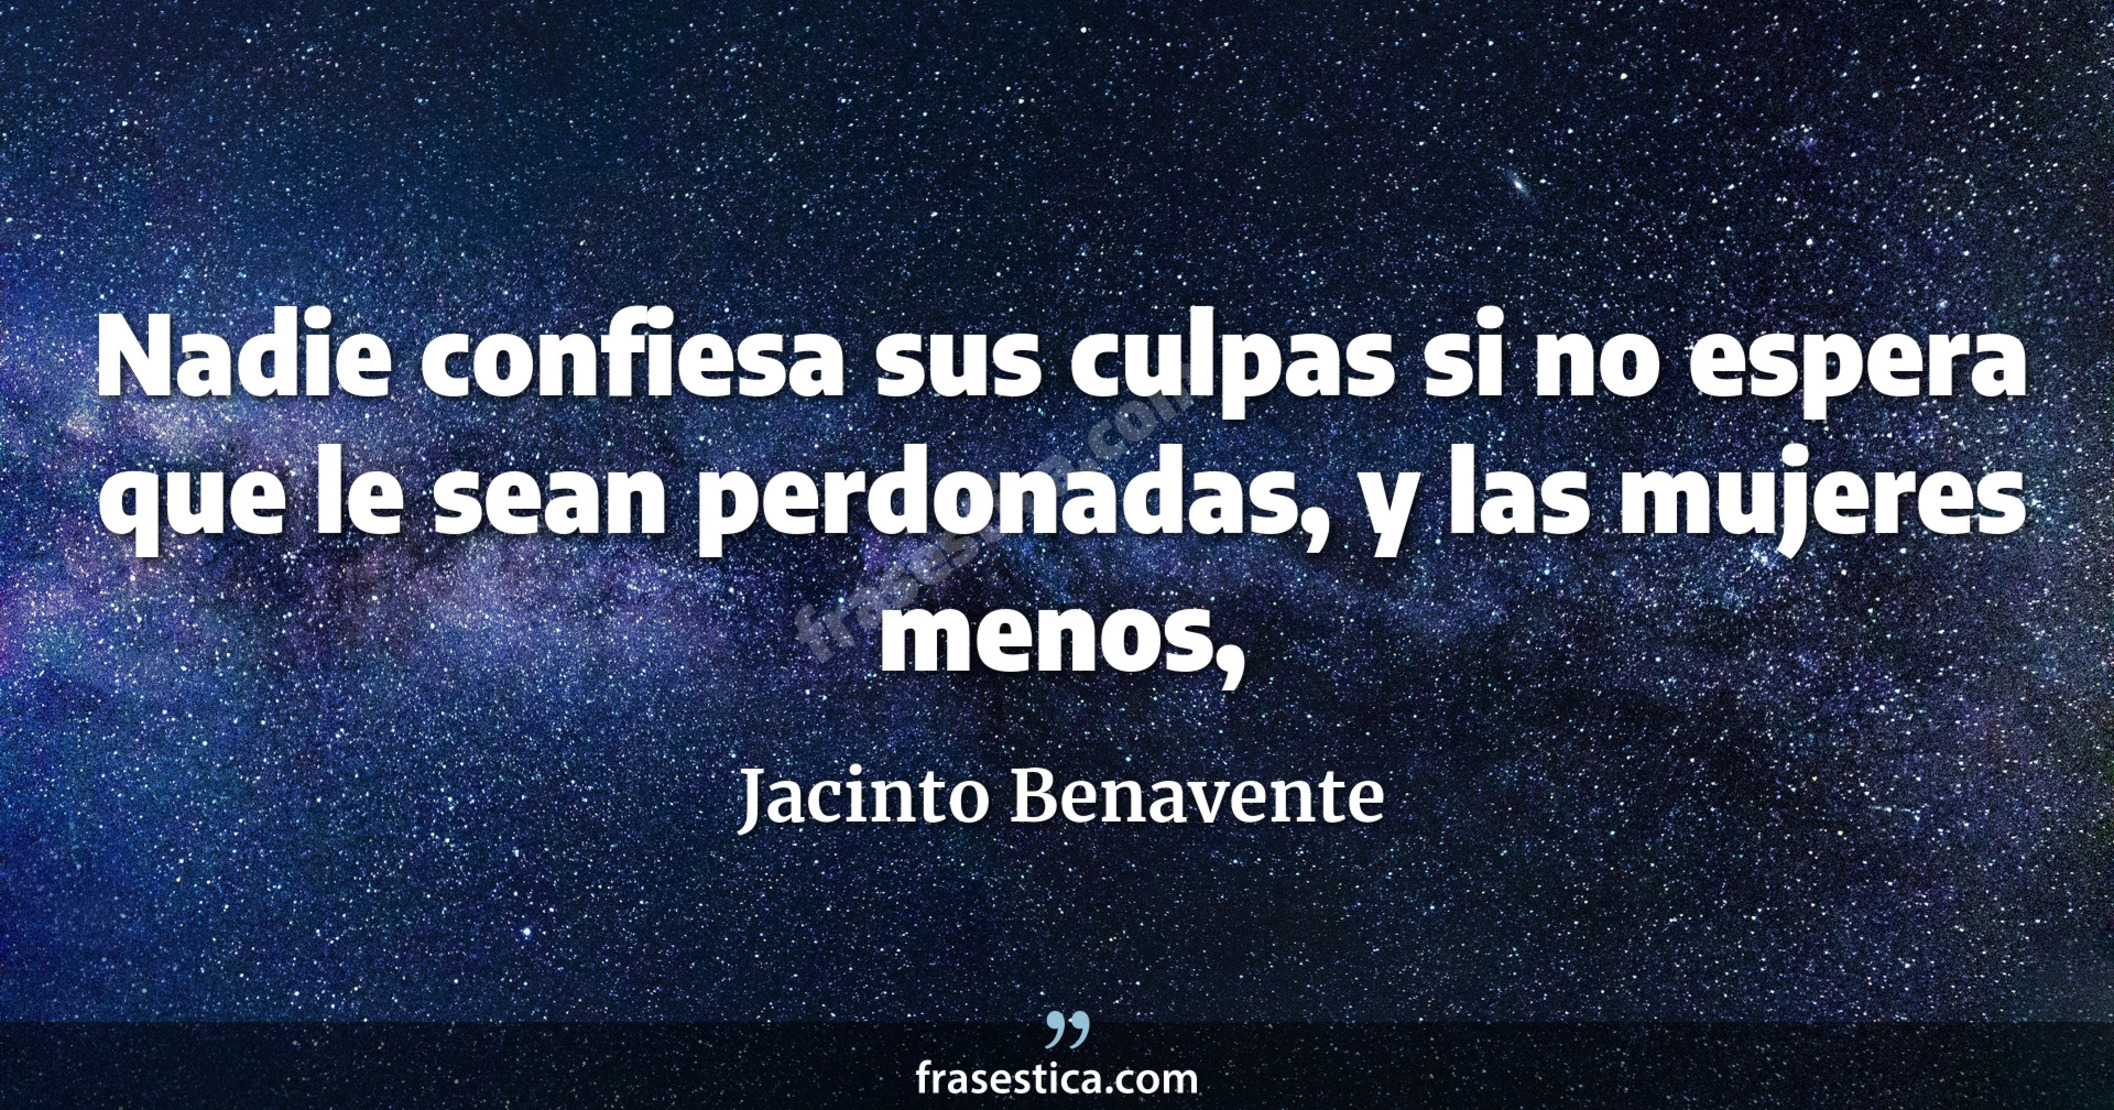 Nadie confiesa sus culpas si no espera que le sean perdonadas, y las mujeres menos, - Jacinto Benavente